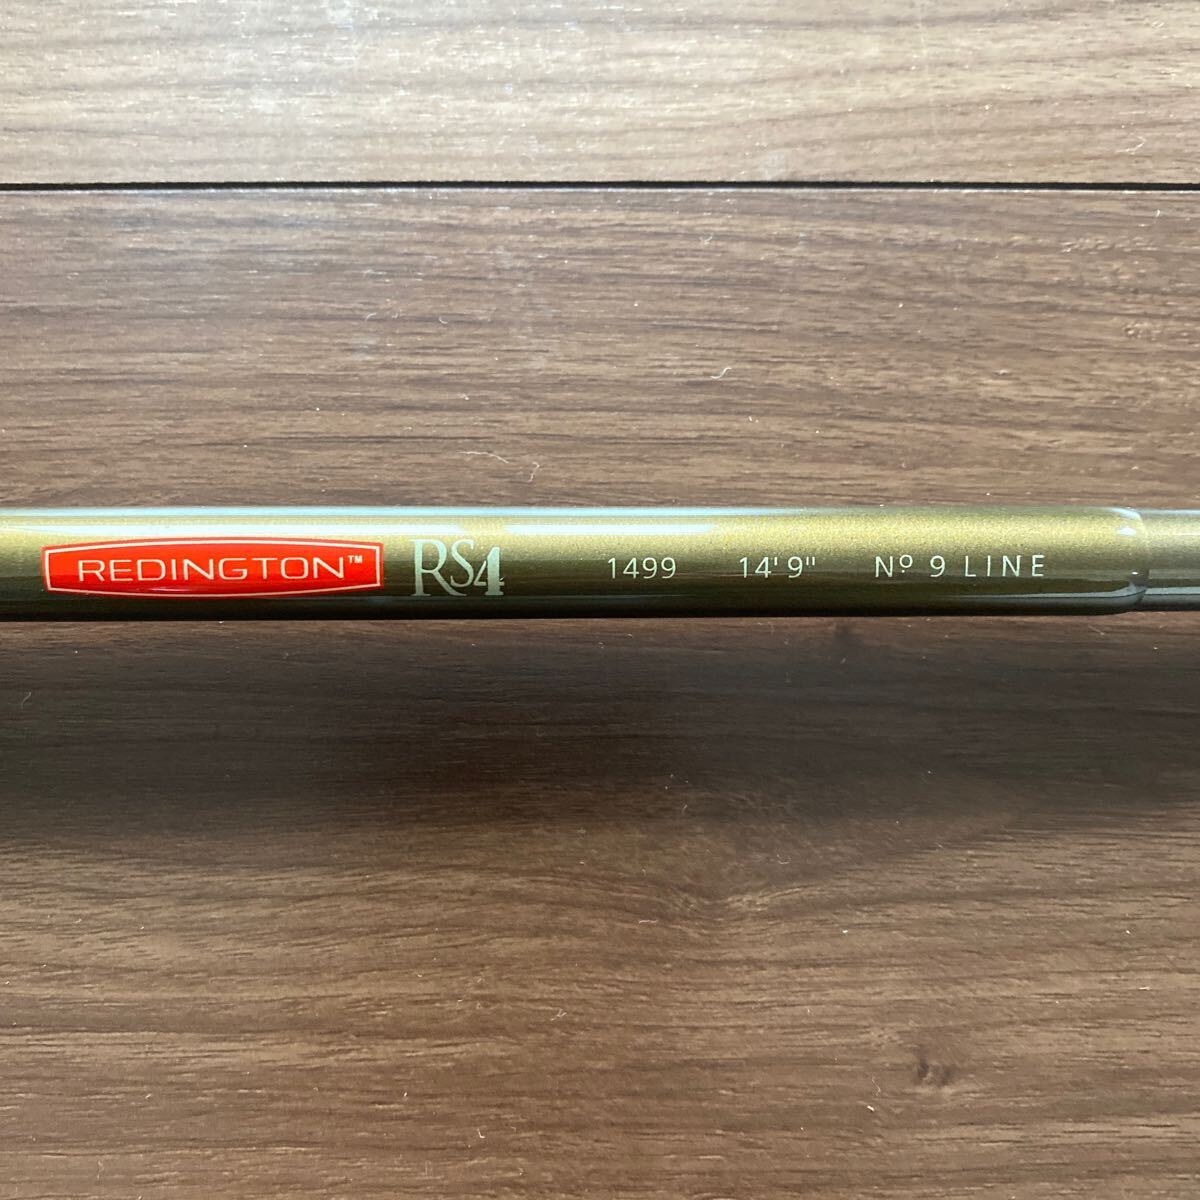 レジントン RS4 1499 14’9”No9 LINE ダブルハンドの14.9フィートで9番の画像2